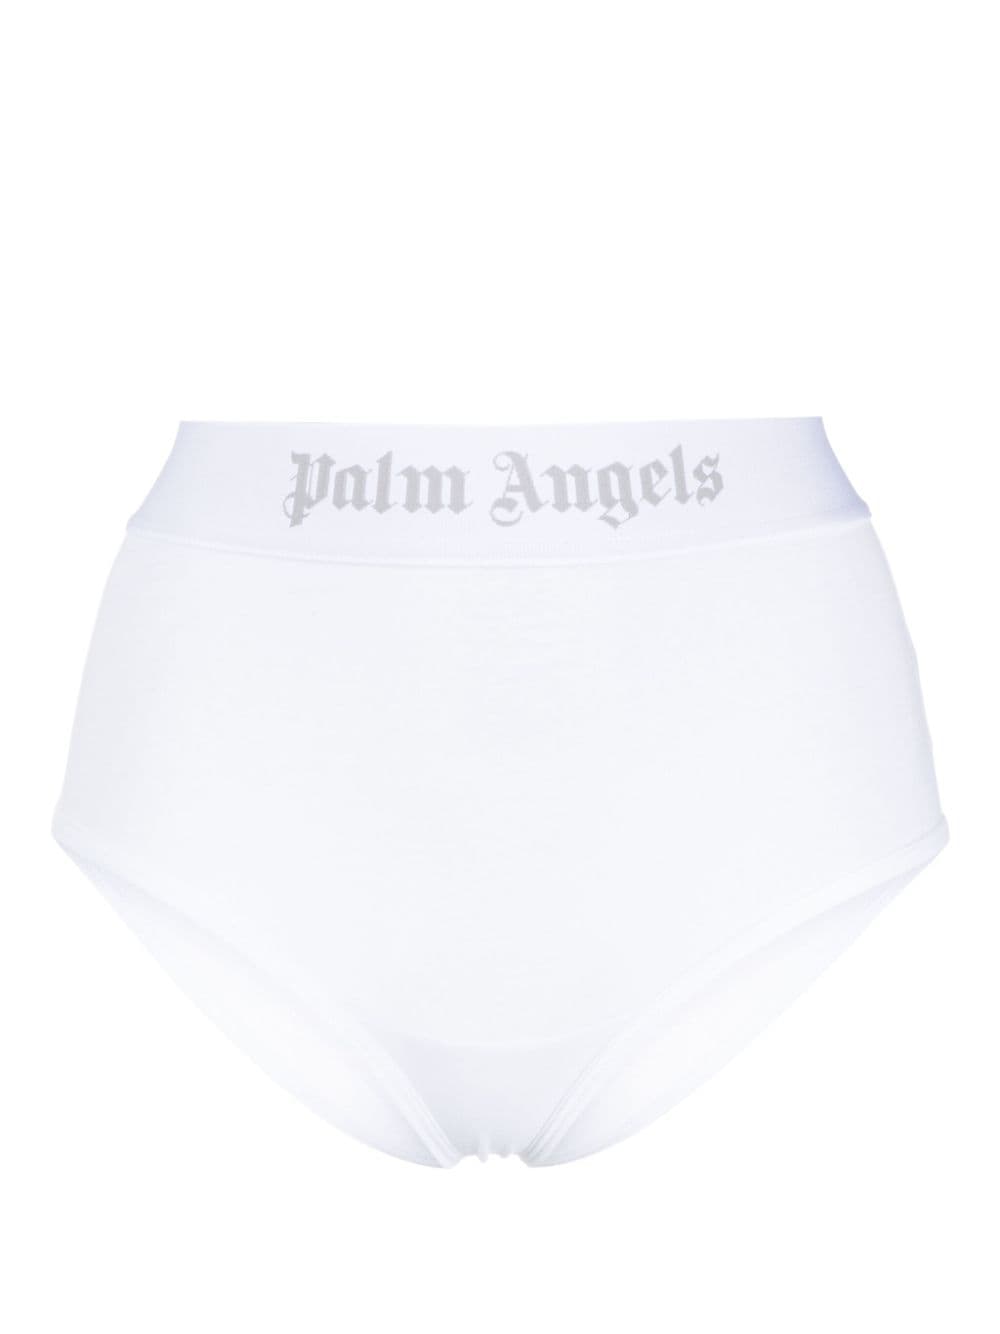 Palm Angels logo-waistband cotton briefs - White von Palm Angels